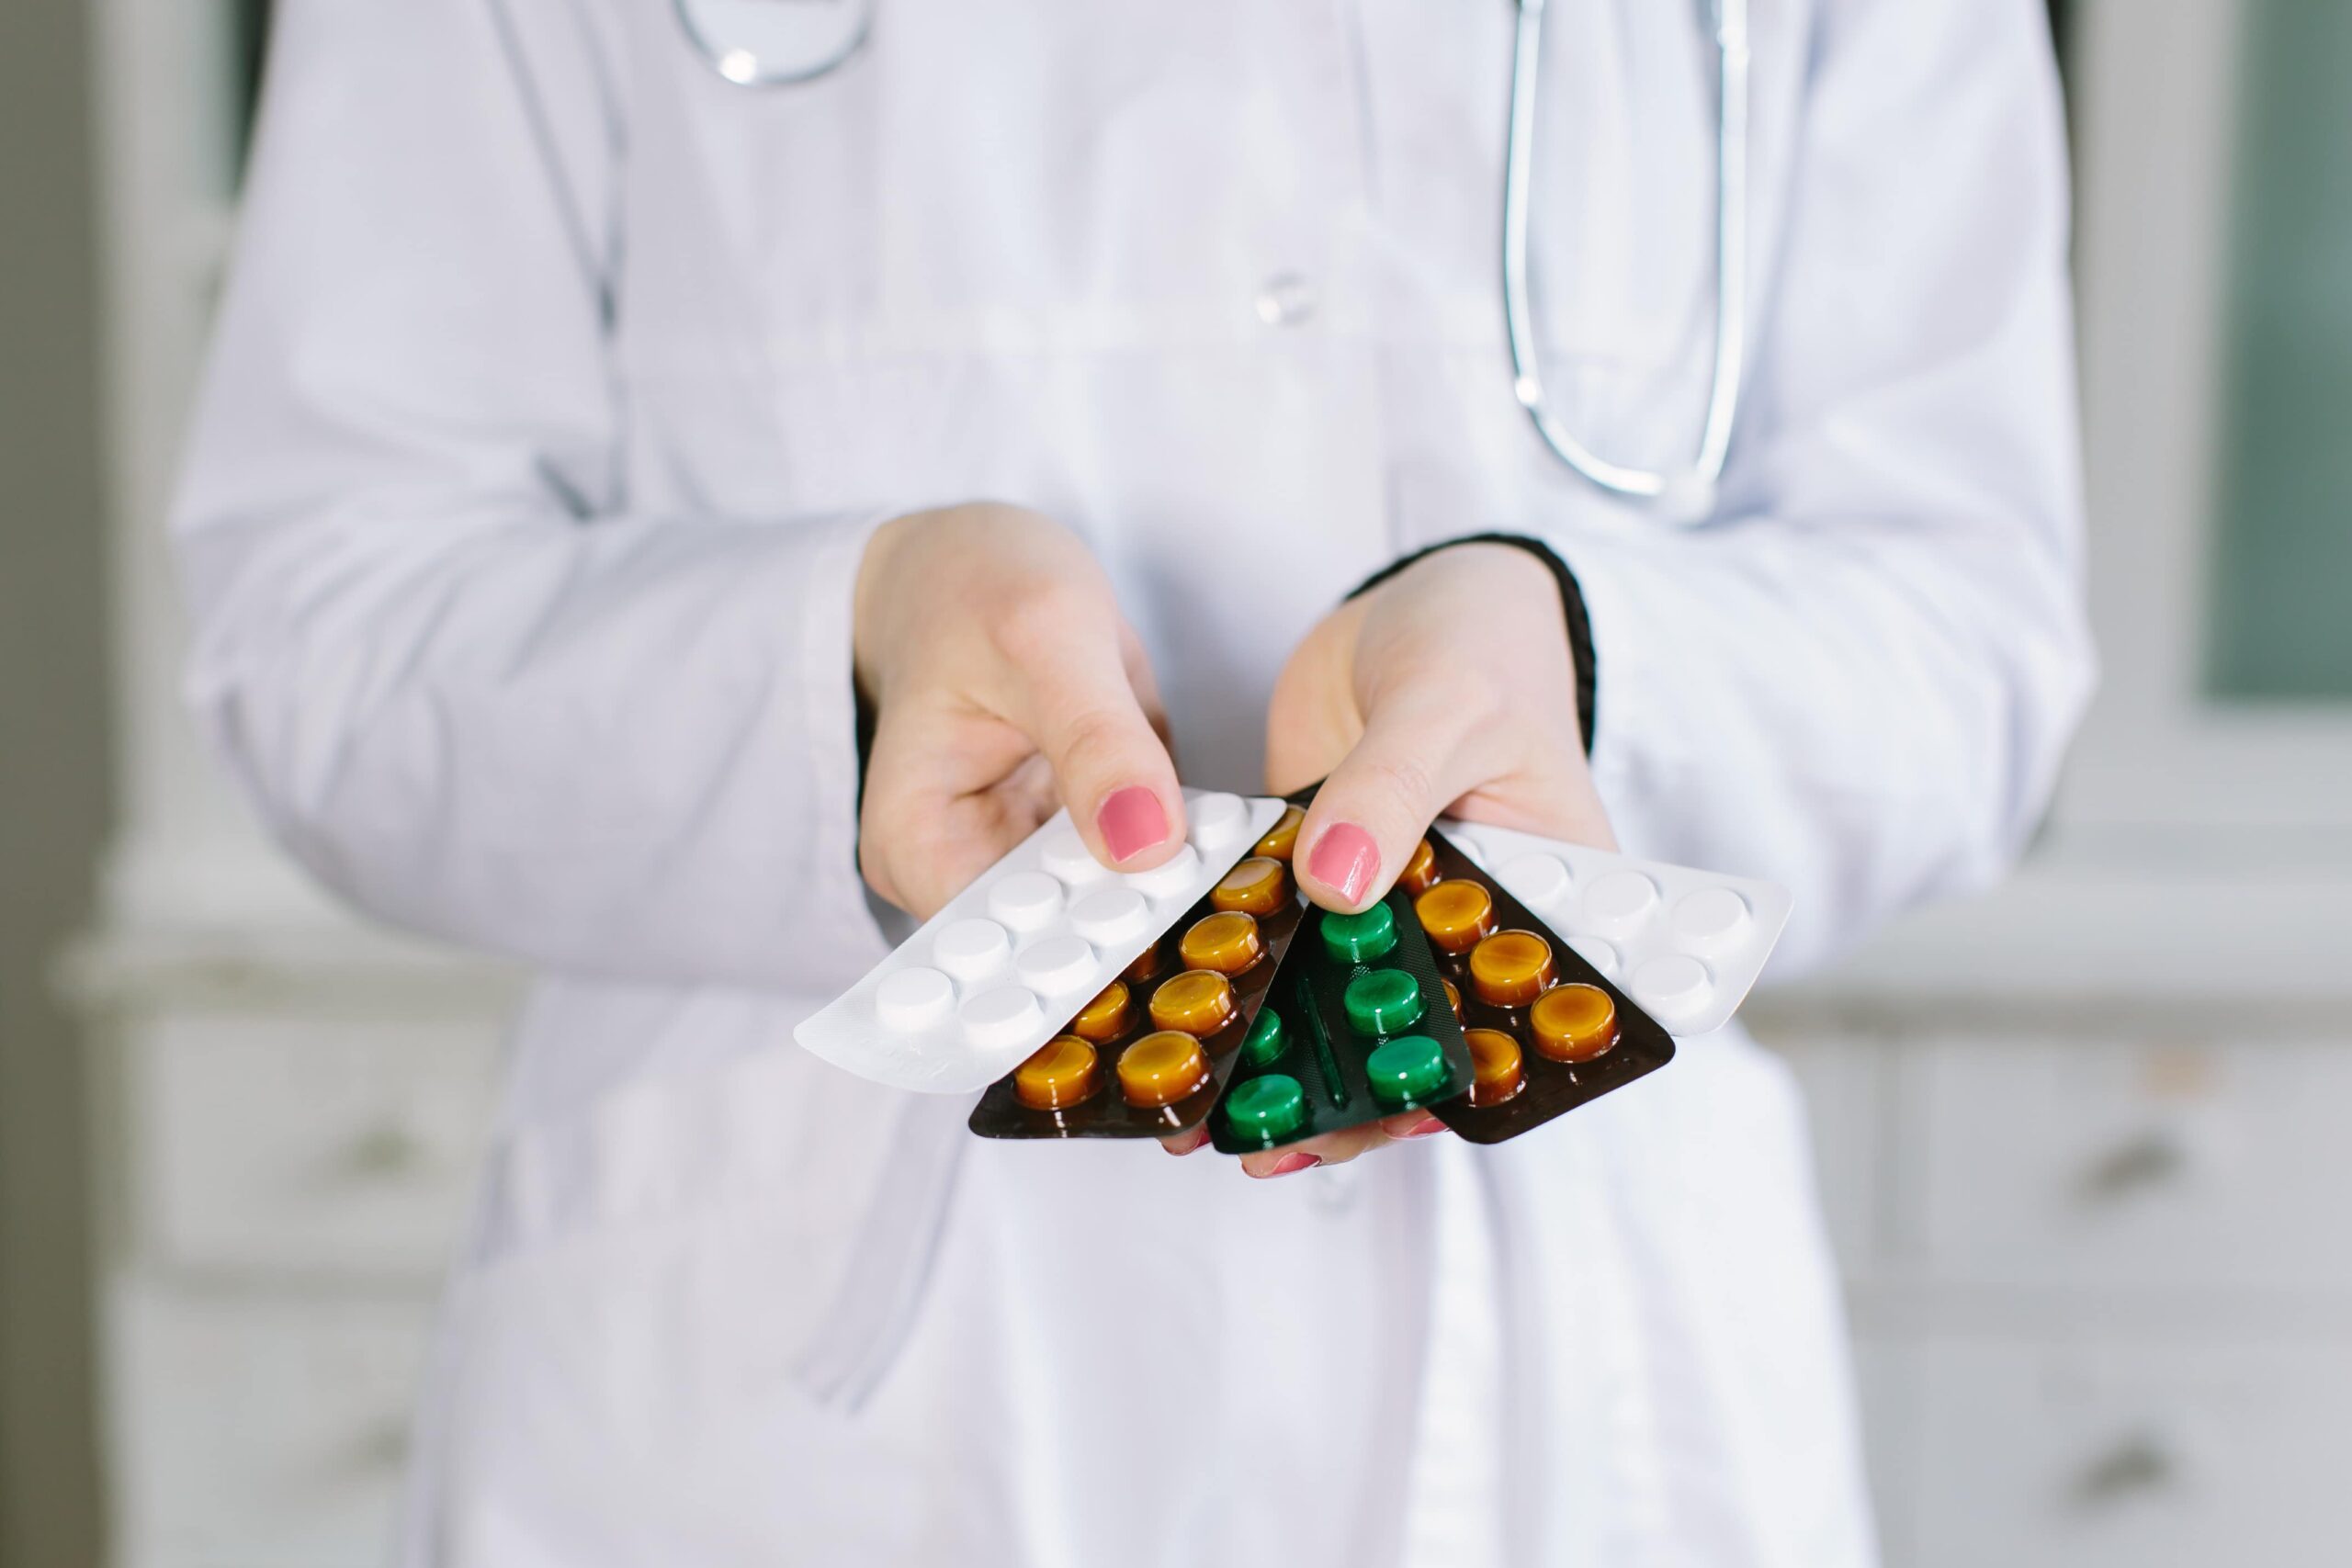 Pharmacist holding blister packs of medicine